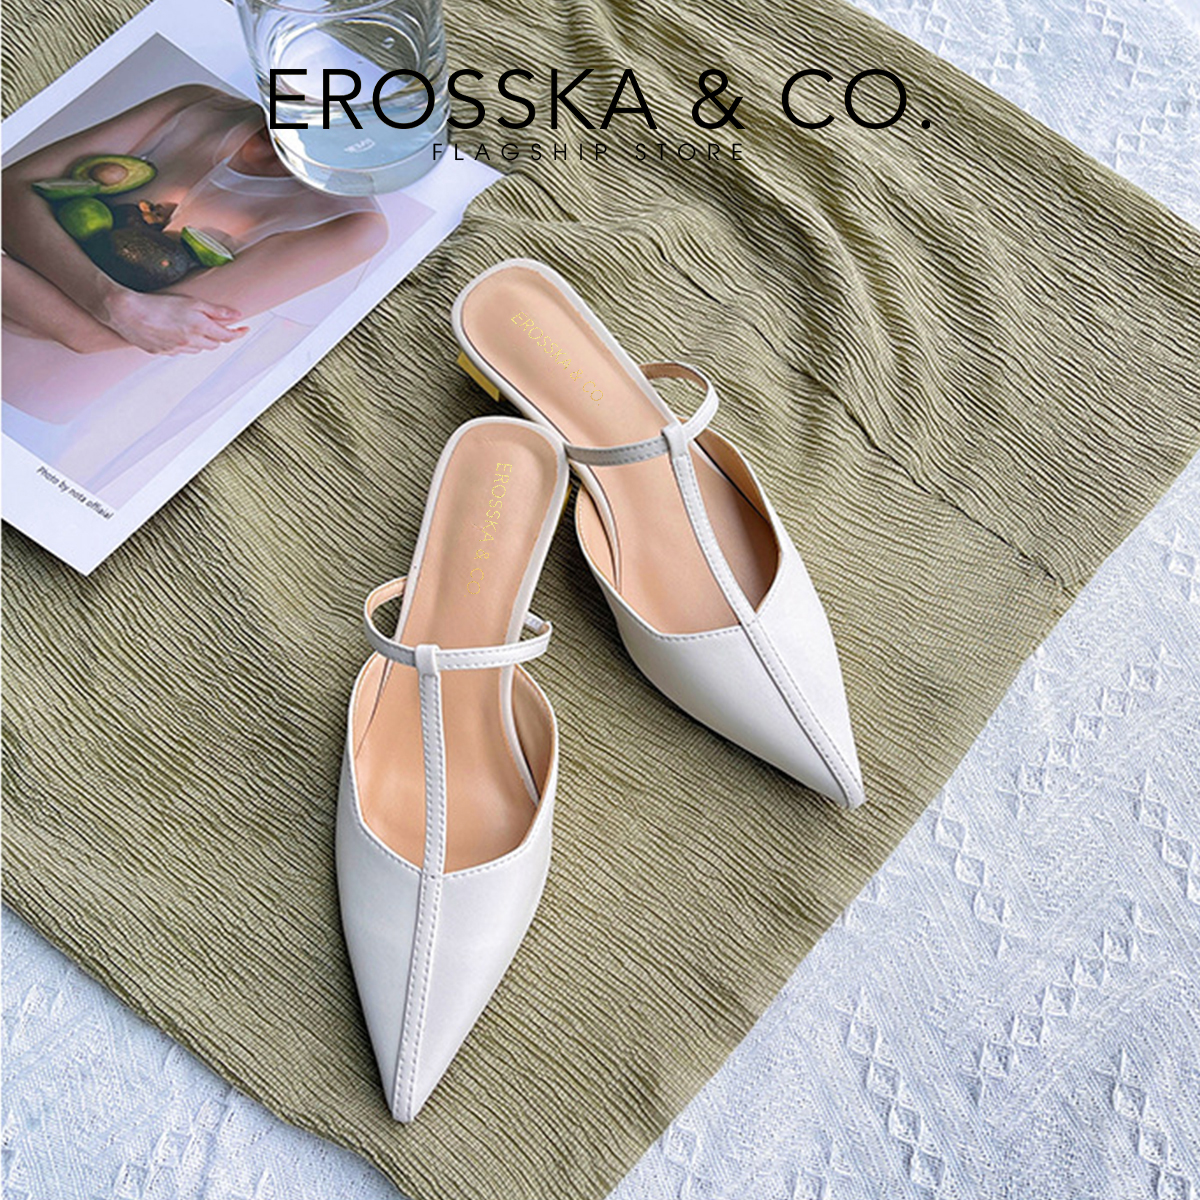 Erosska - Giày cao gót phối dây phong cách Hàn Quốc cao 5,5cm EH040